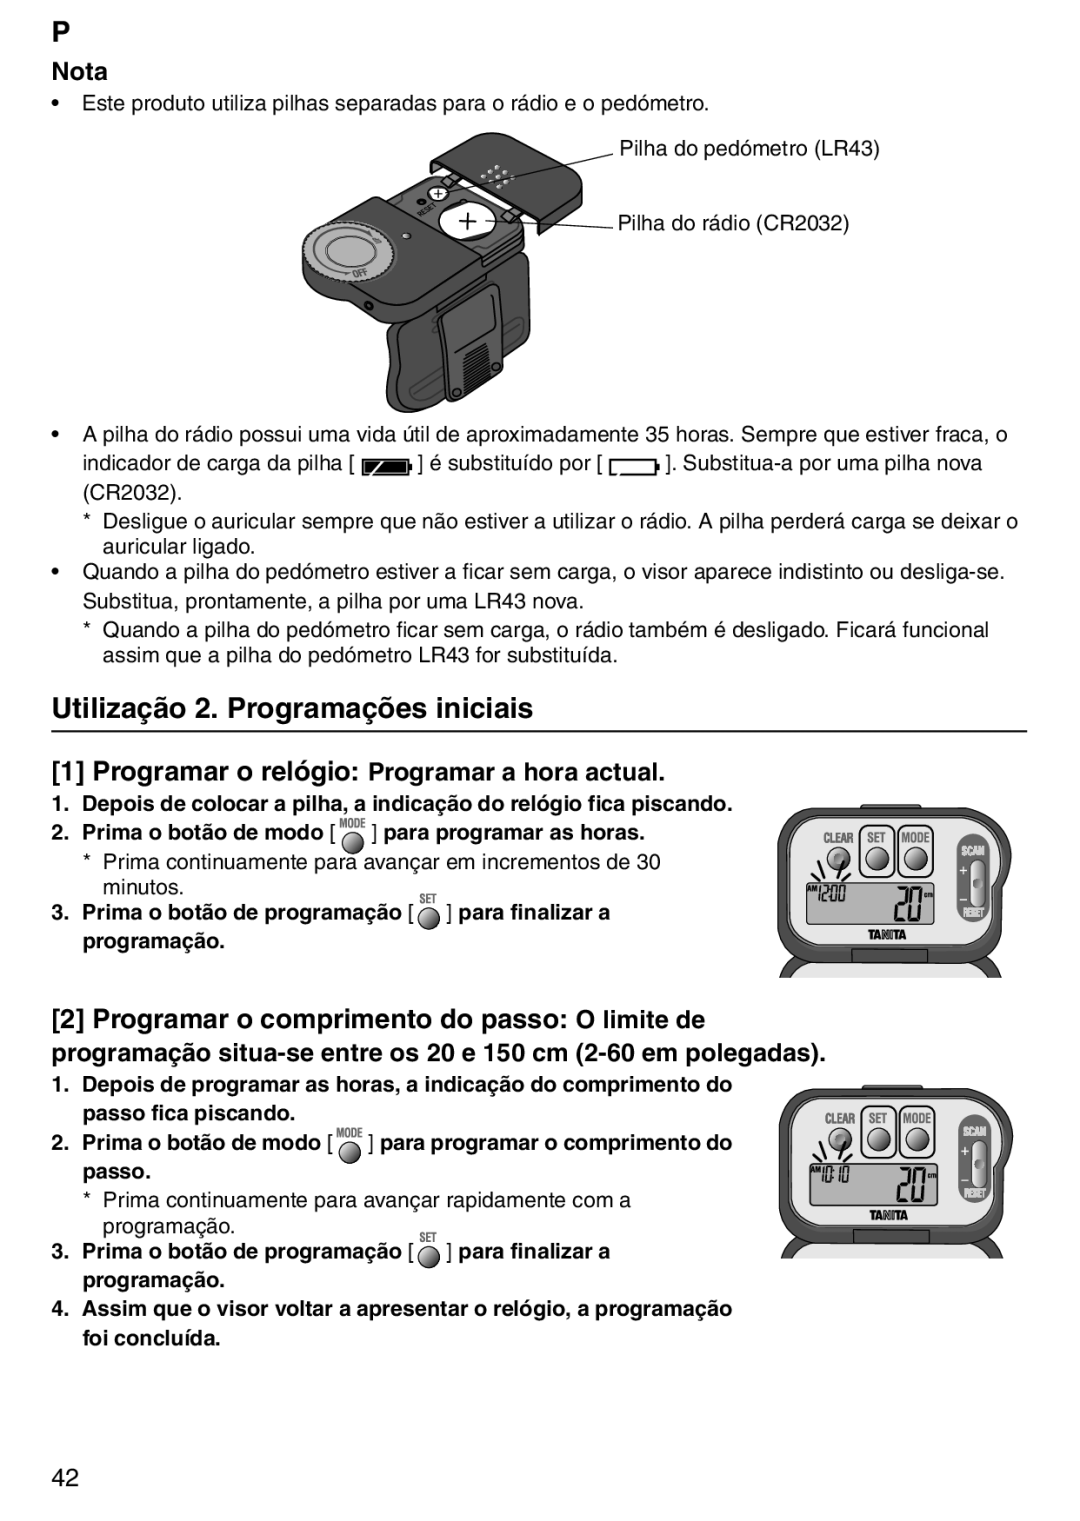 Tanita PD640 instruction manual Utilização 2. Programações iniciais, 1Programar o relógio Programar a hora actual, Nota 